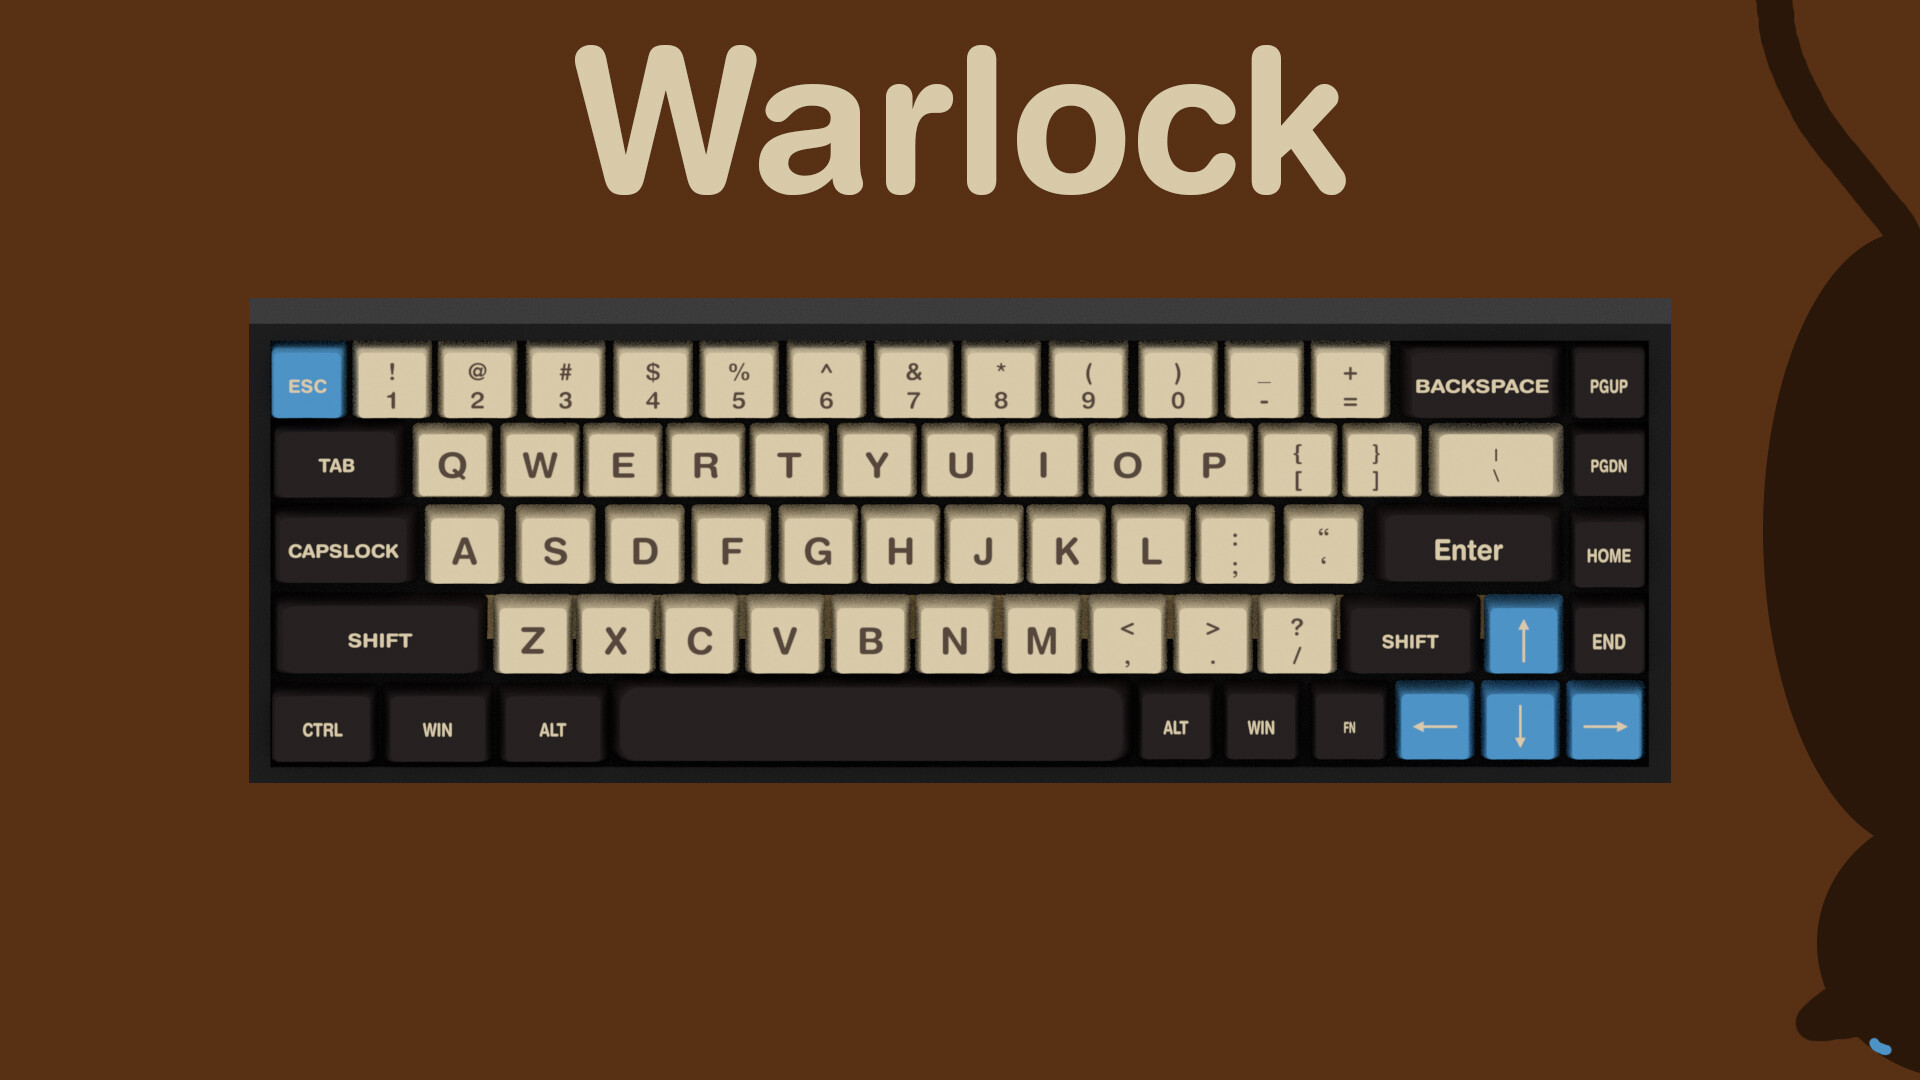 ArtStation - Warlock keycaps